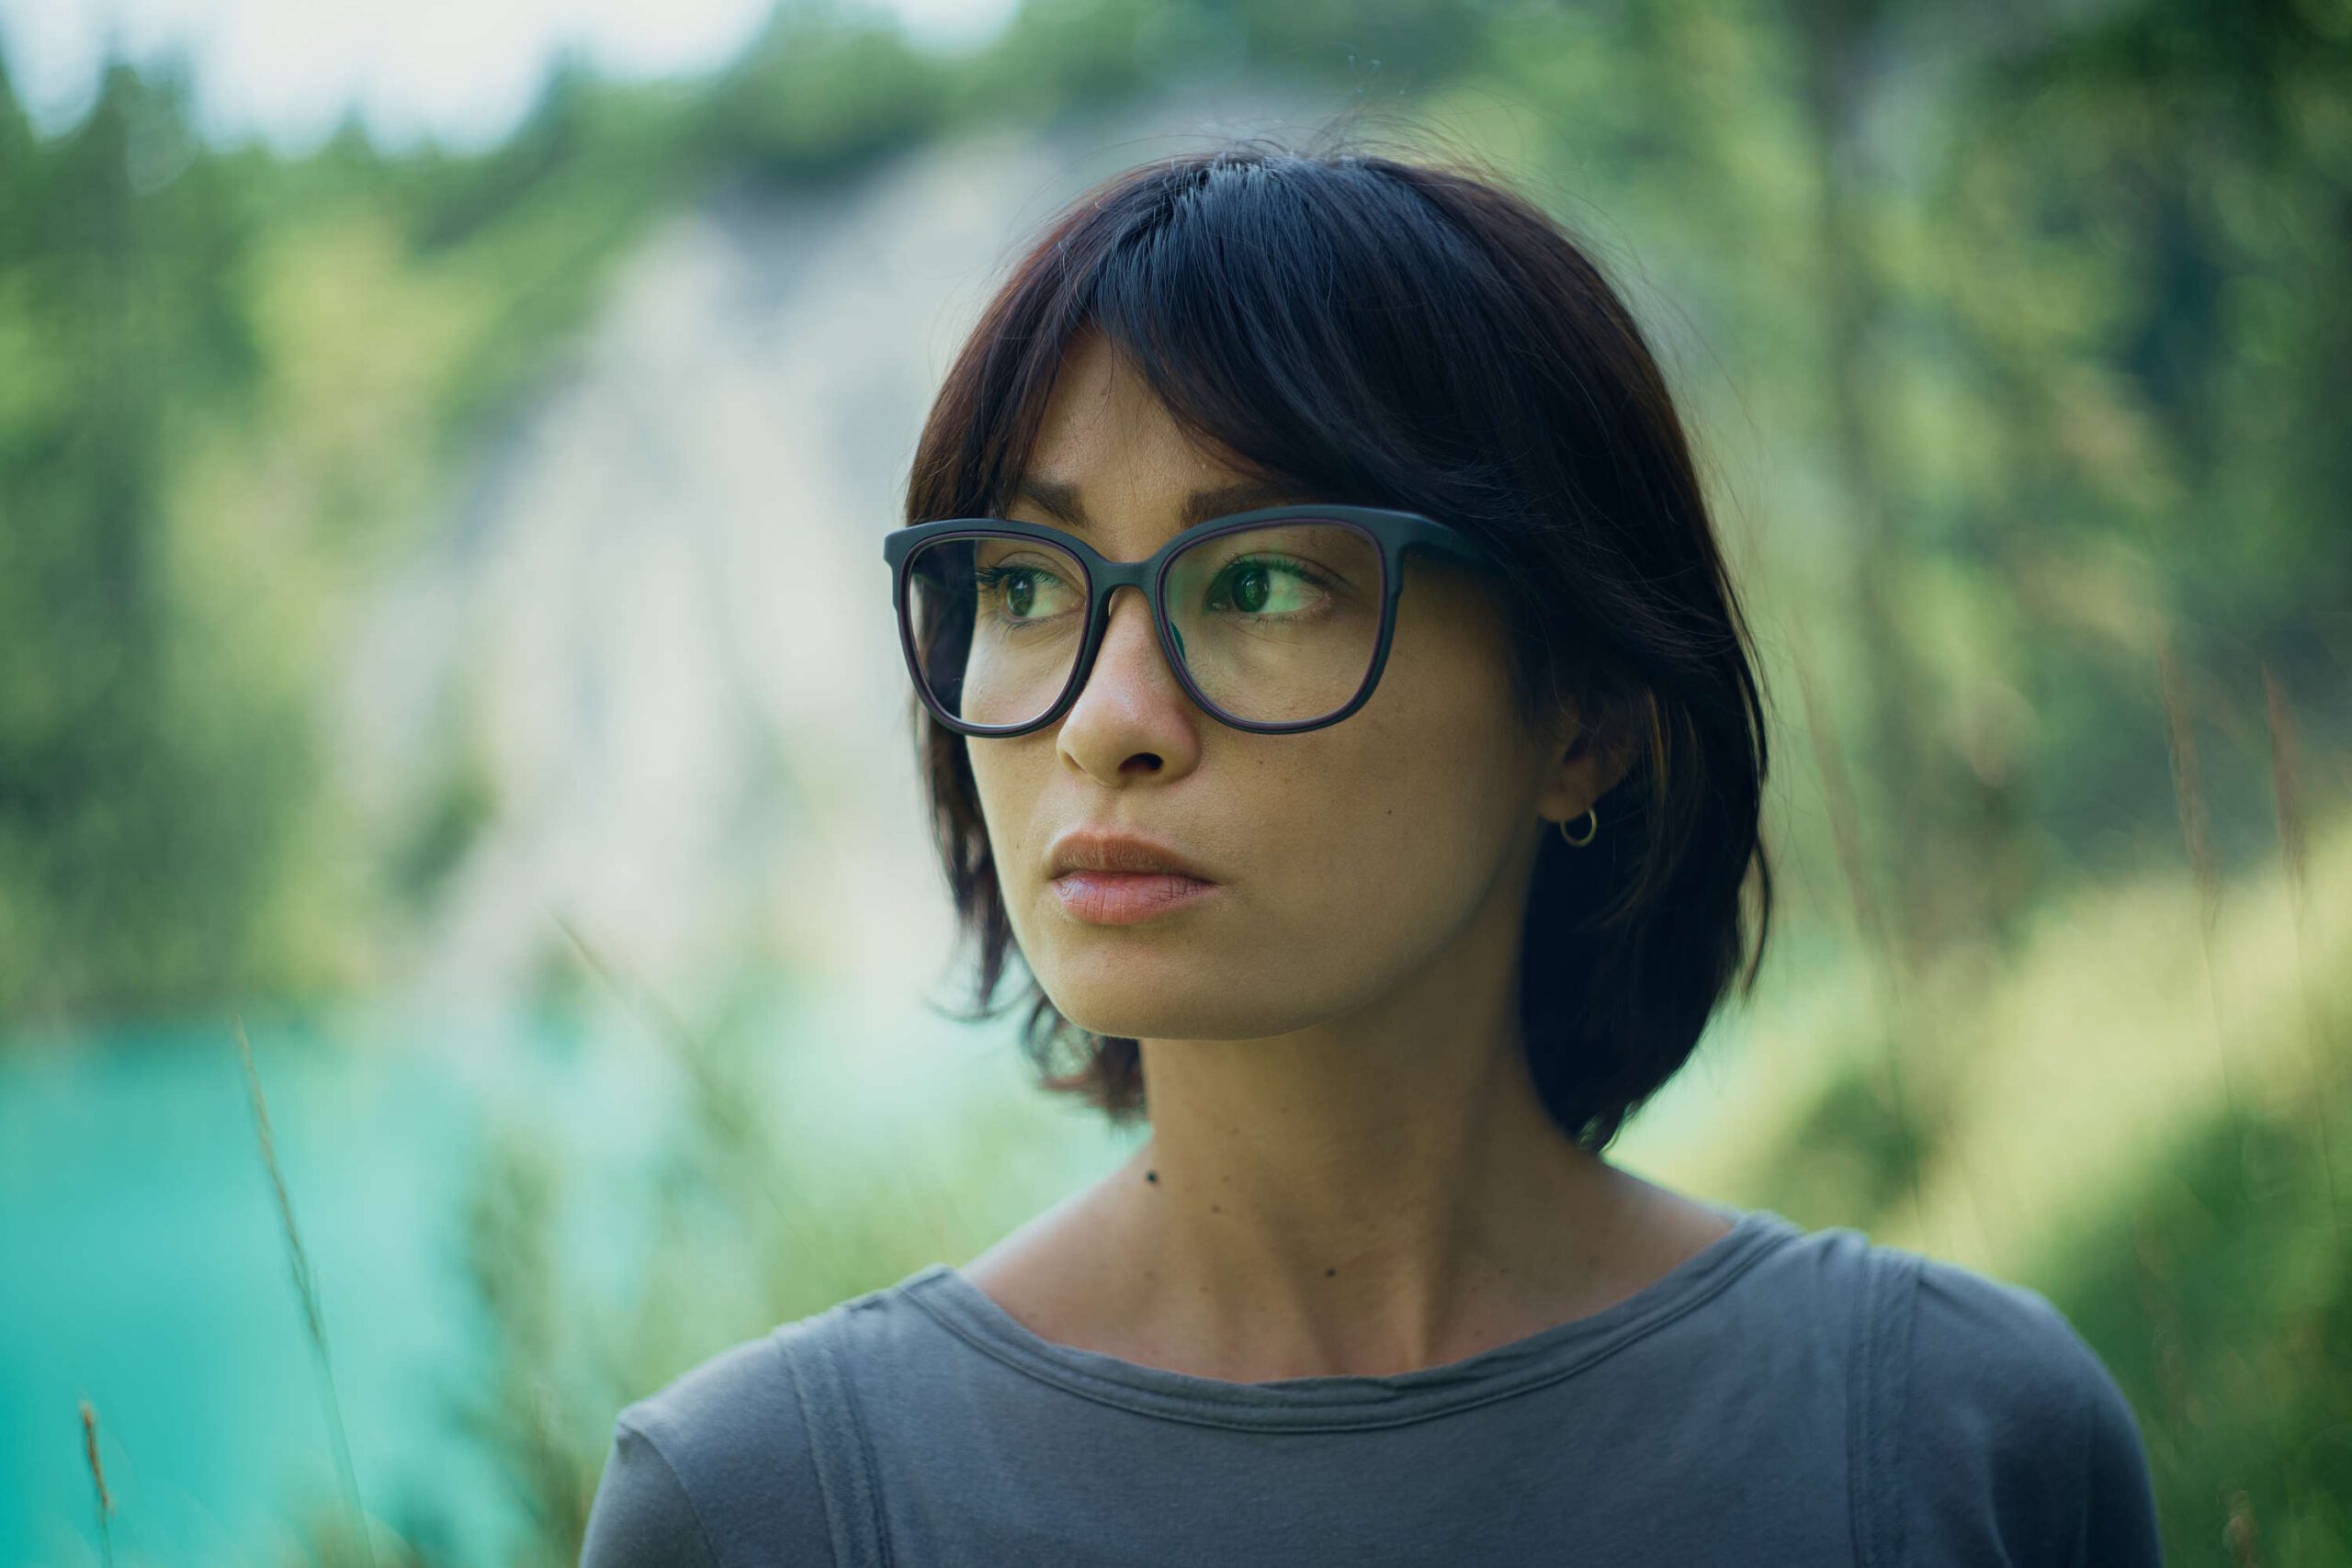 Nachdenkliche Frau mit Brille im Grünen als Inspiration für "Augen schminken"